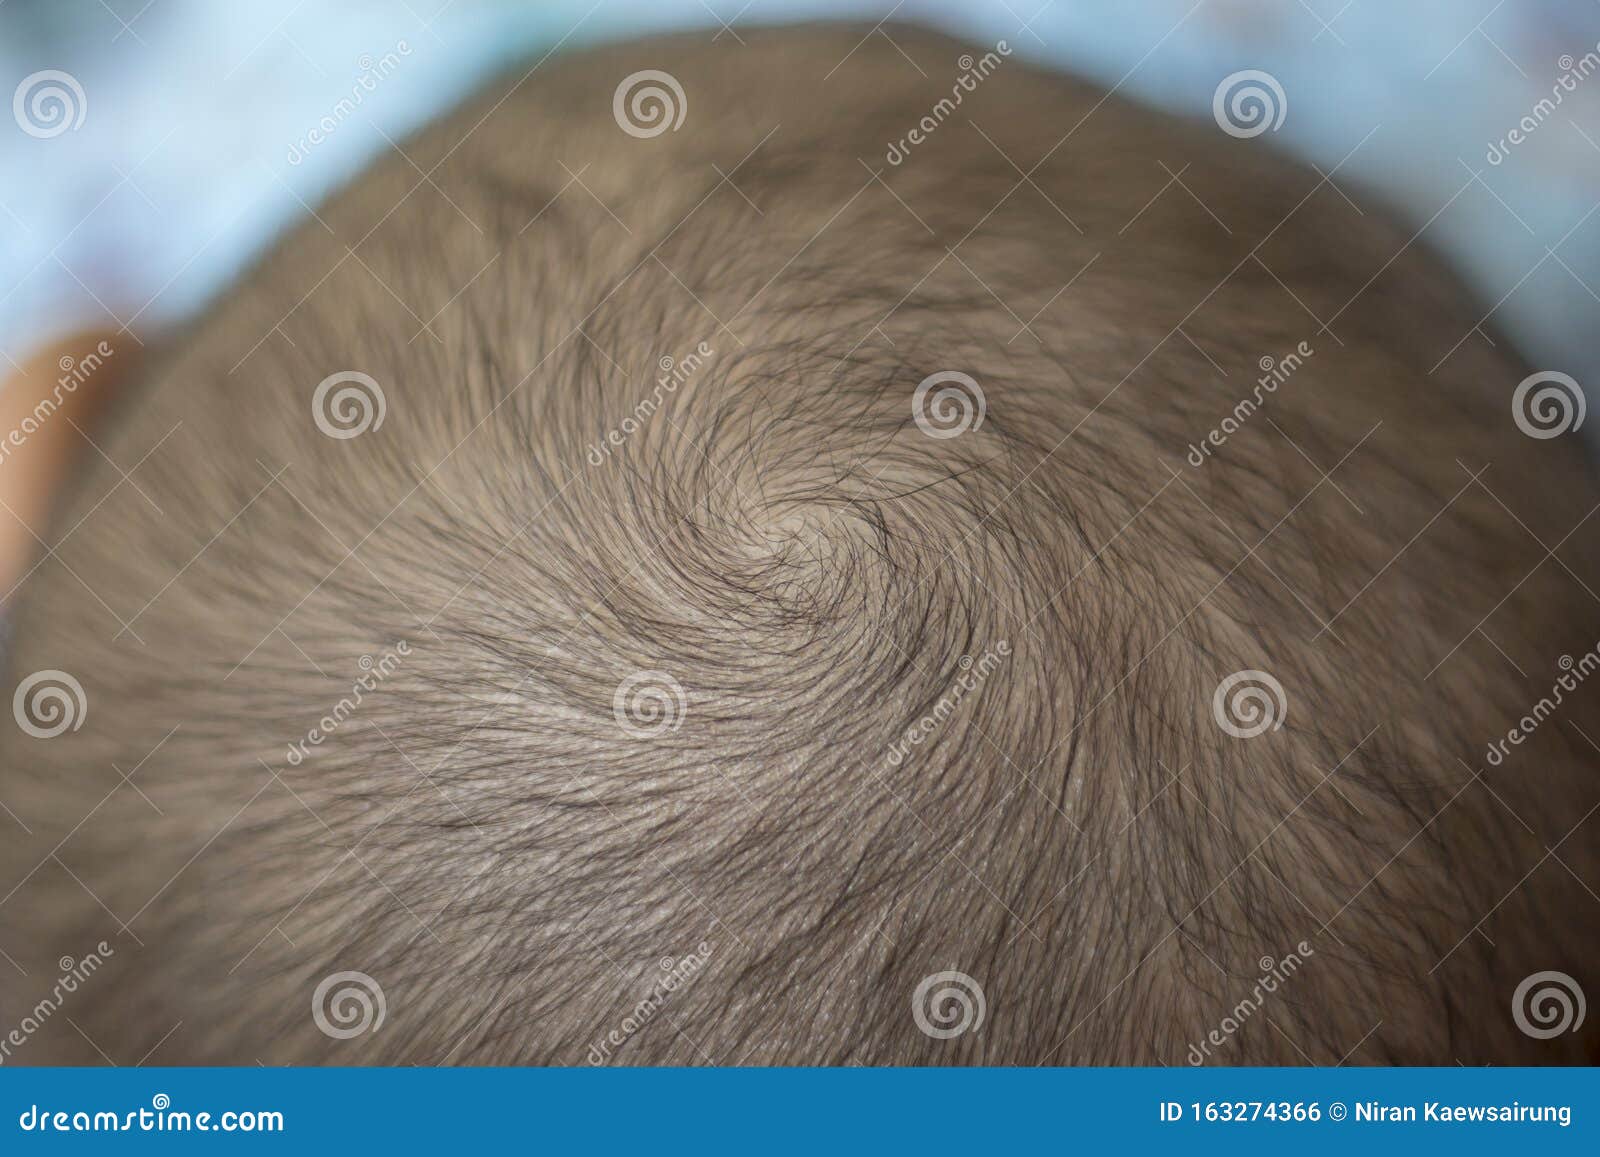 Un Tourbillon De Cheveux Est Un Coin De Cheveux Poussant Dans Une Direction  Circulaire Autour D'un Point Central Visible Photo stock - Image du  coiffure, centre: 163274366